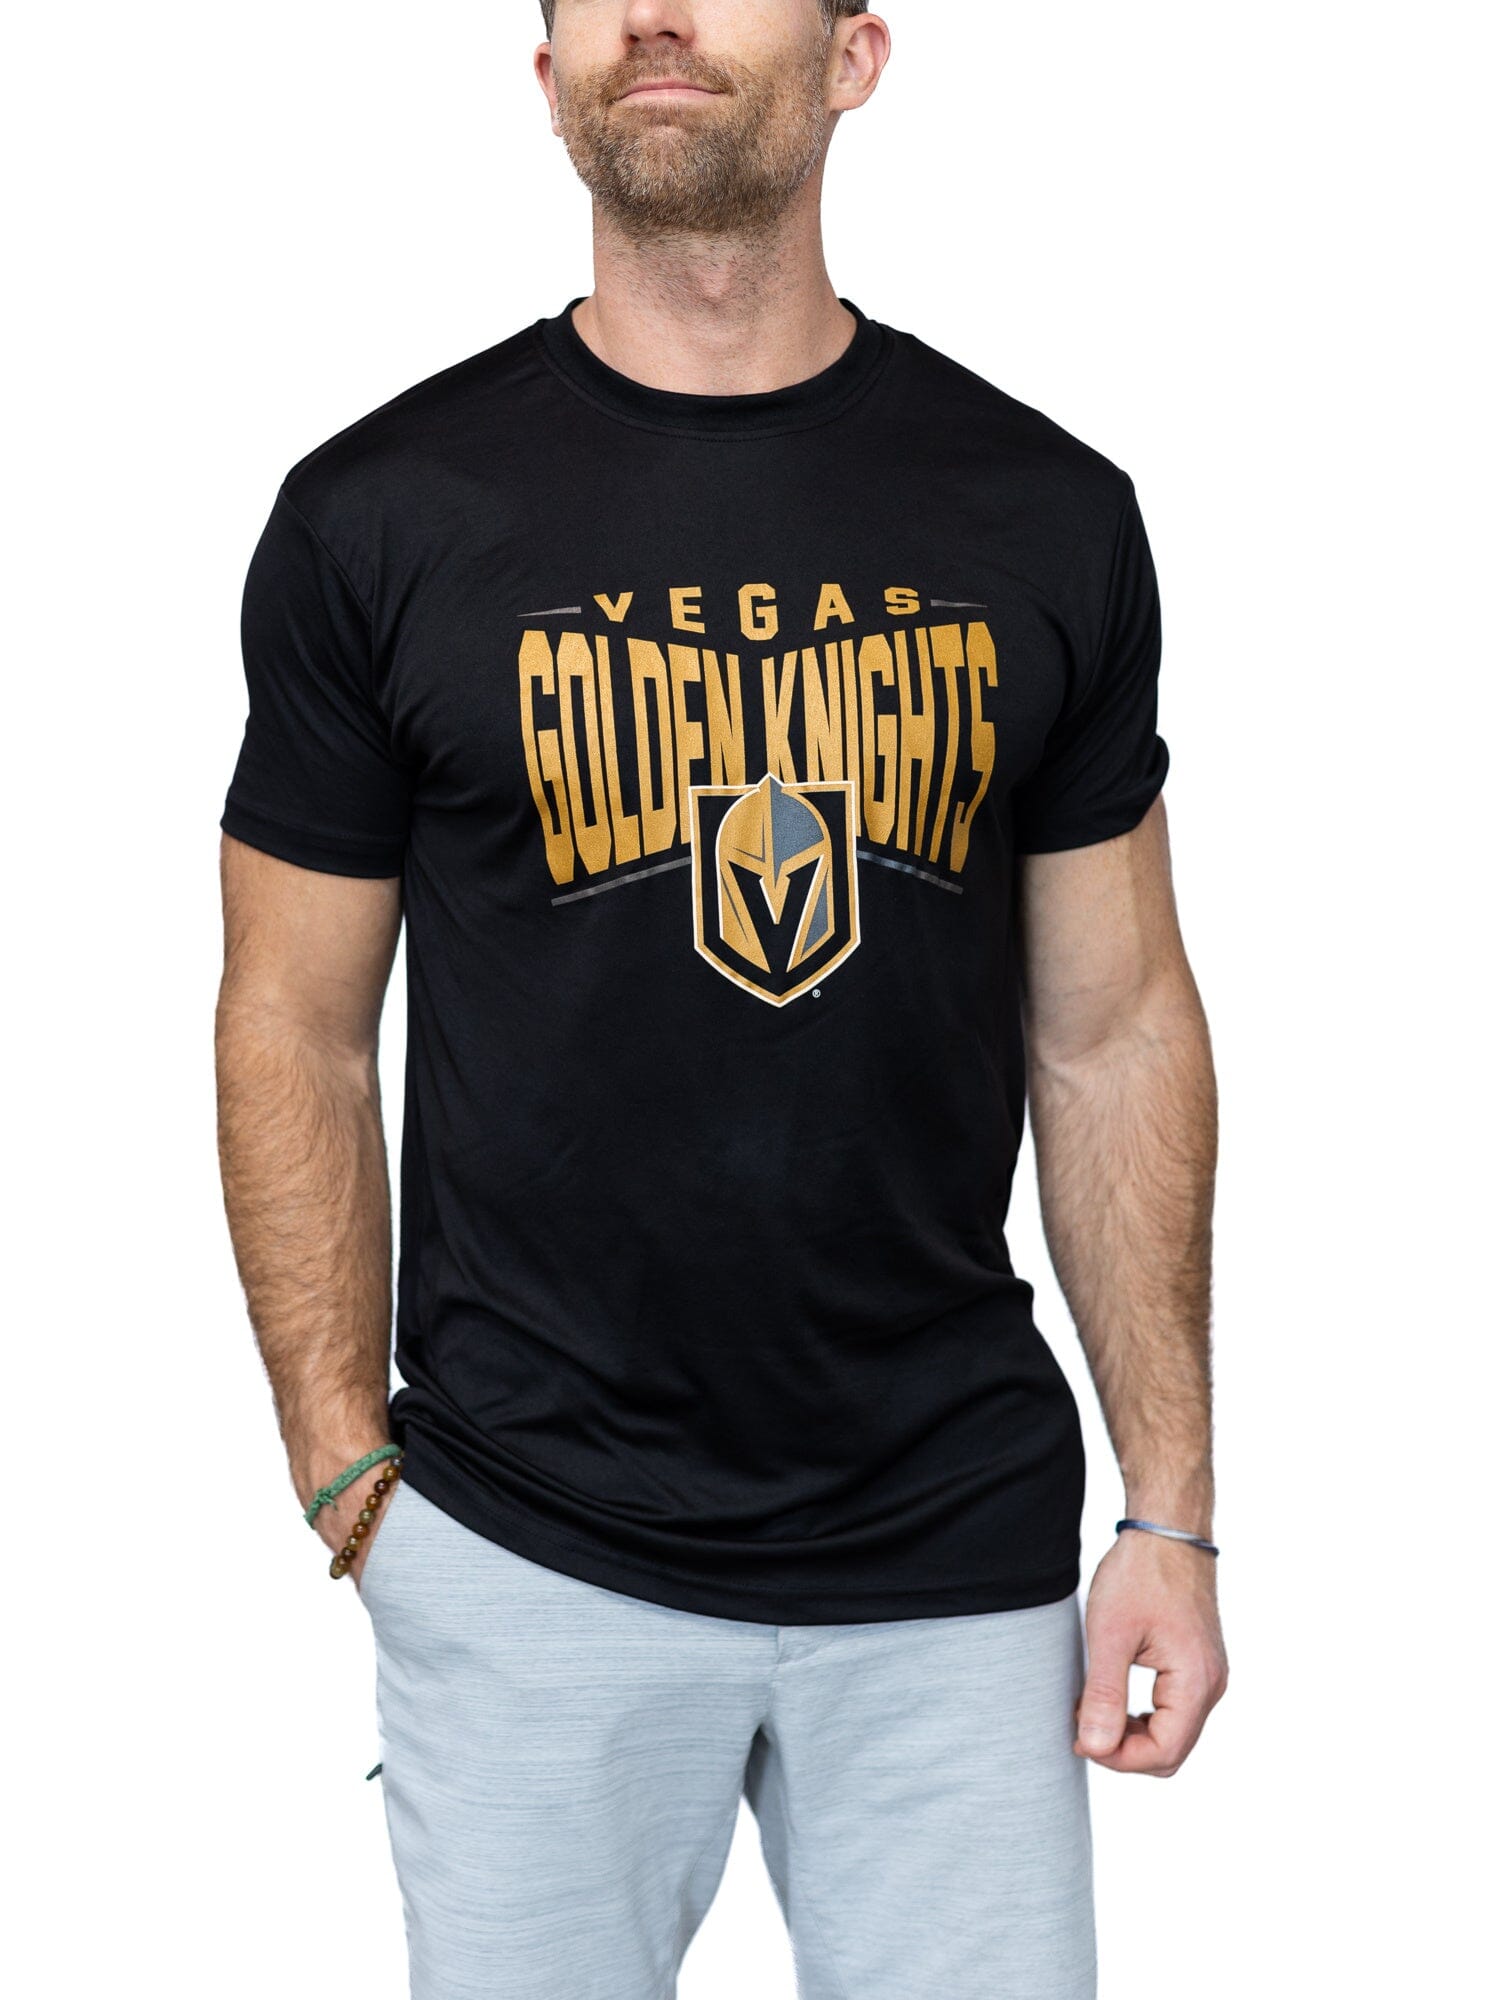 Official Goldenknights Vgk Tee Shirt - Hnatee